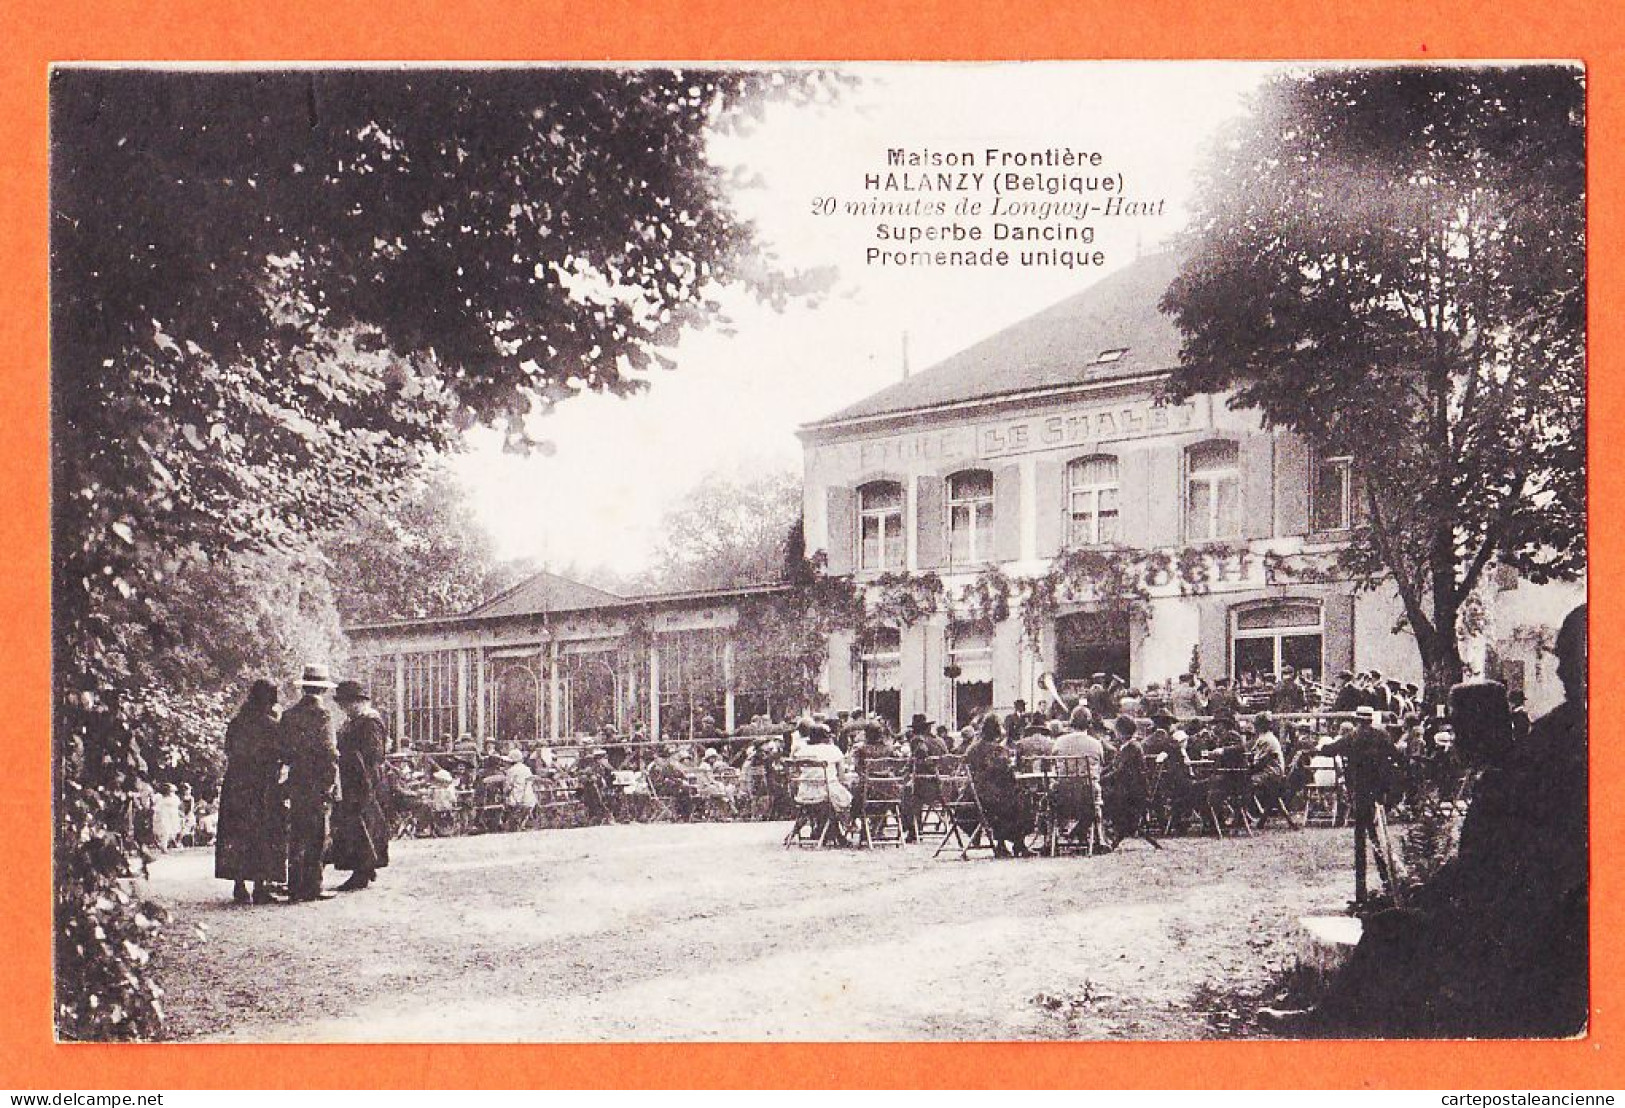 18034 / HALANZY Be254 België Luxembourg Aubange LE CHALET Maison Frontiere Dancing 20 Minutes De LONGWY-HAUT 1910s  - Aubange